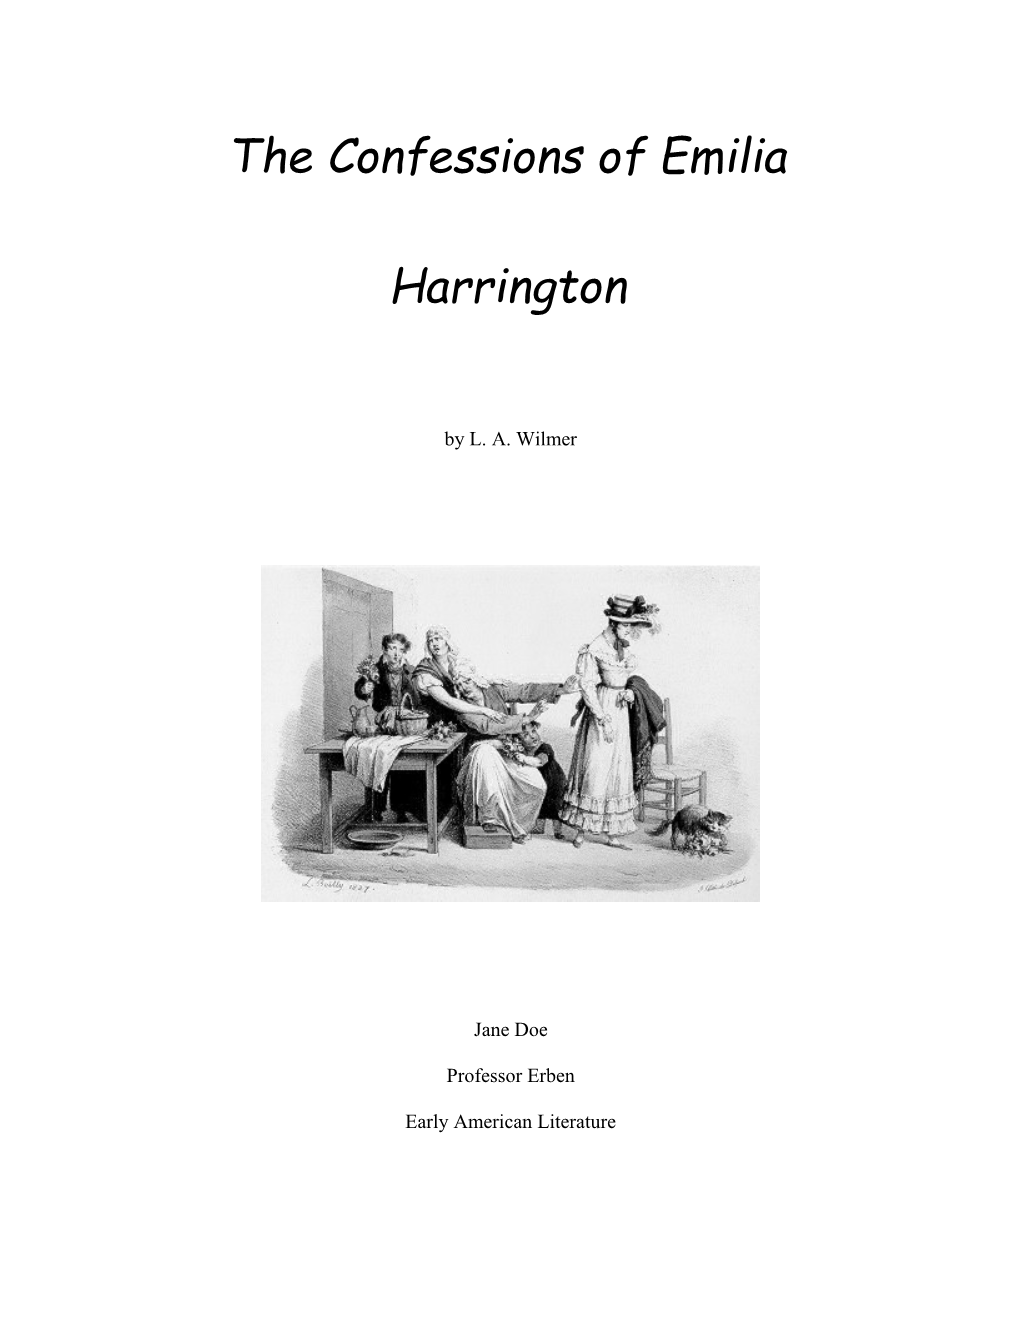 The Confessions of Emilia Harrington